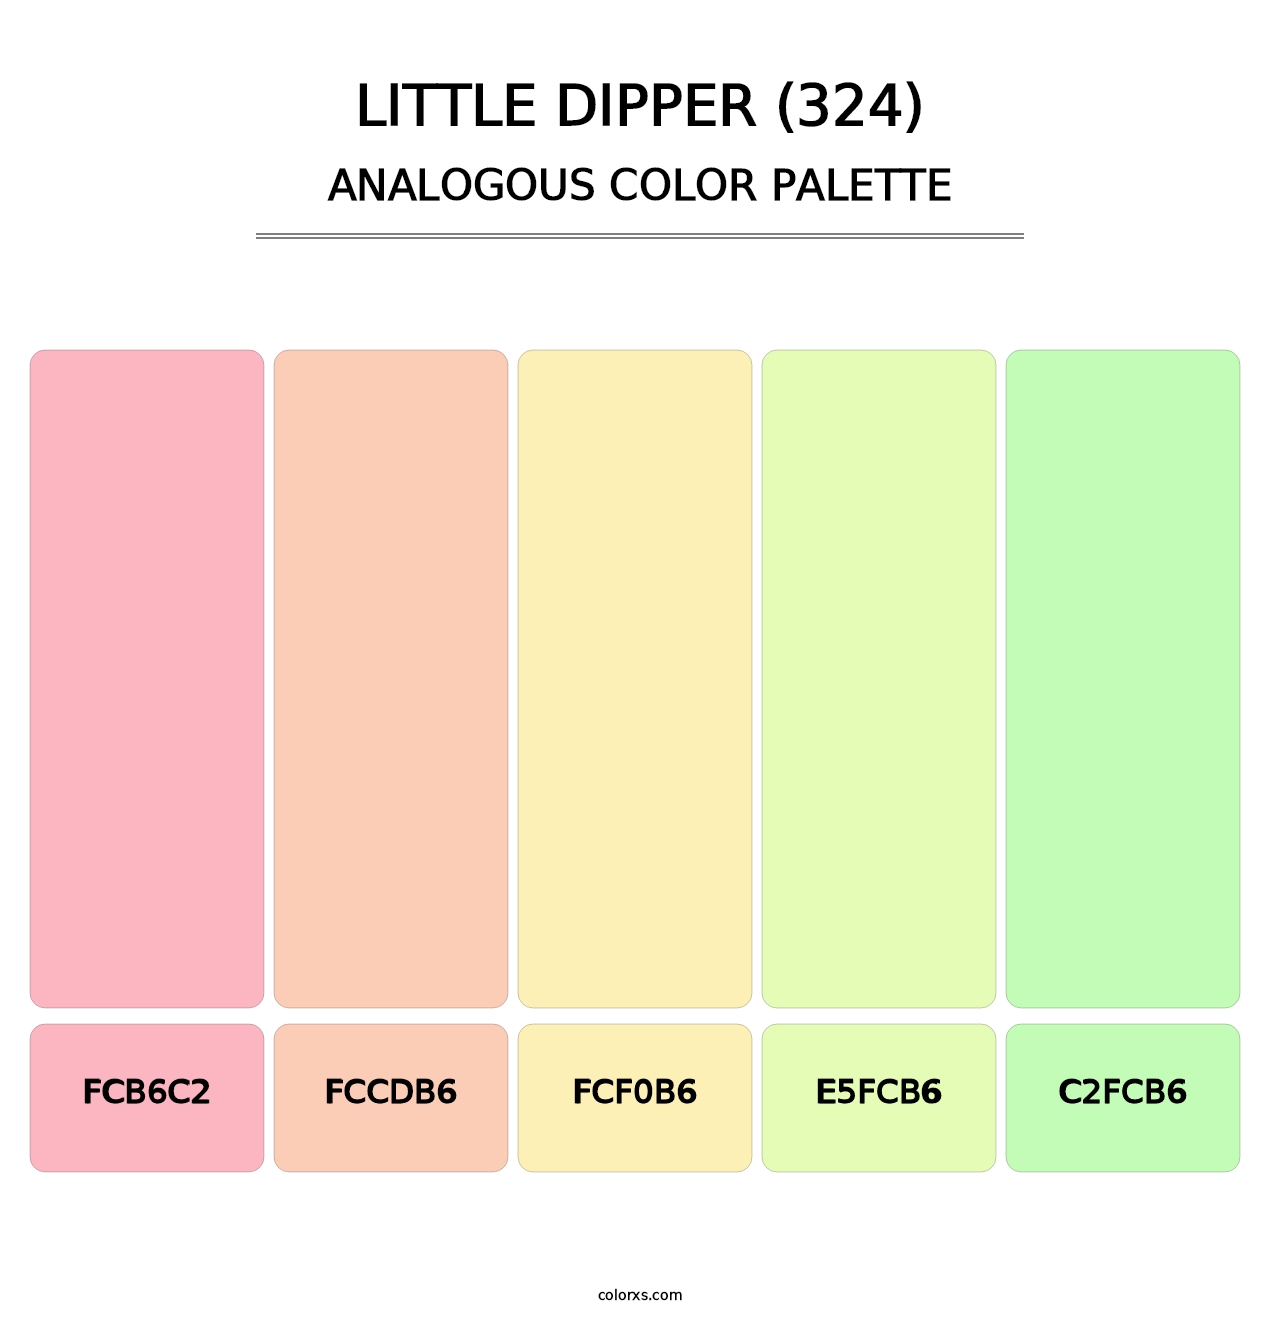 Little Dipper (324) - Analogous Color Palette